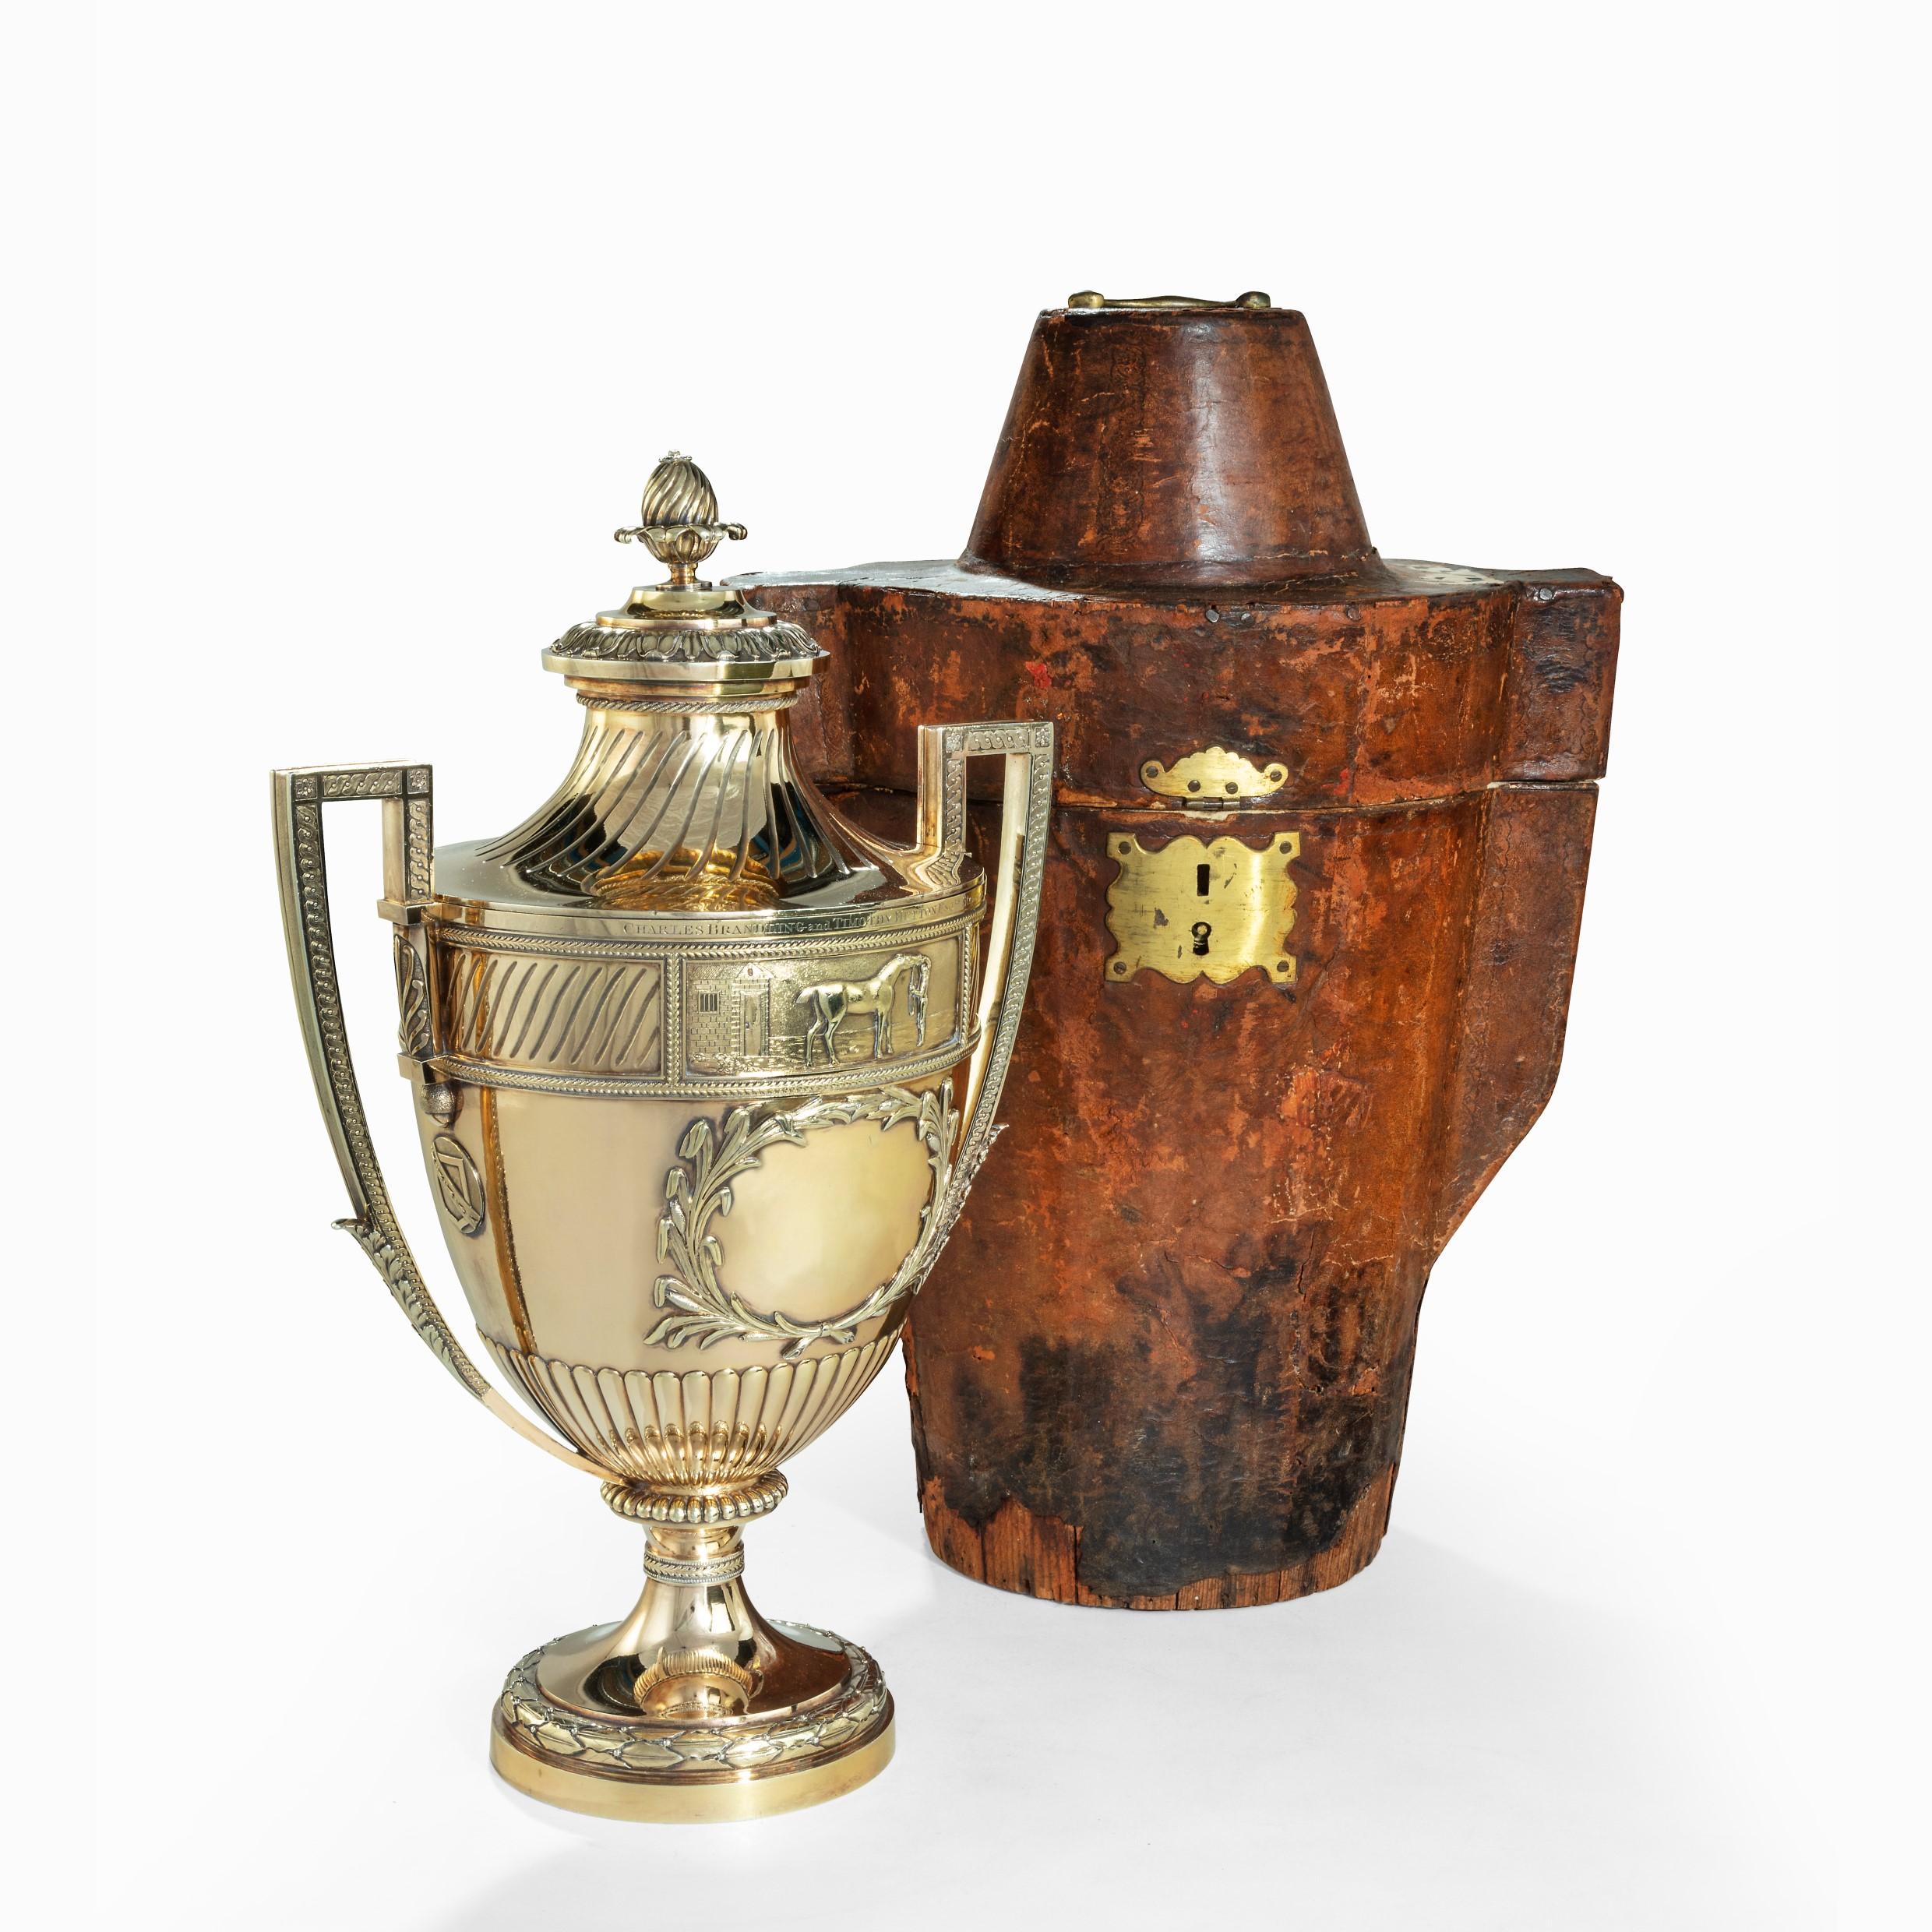 Cet exceptionnel trophée en argent doré a été réalisé par Paul Storr en 1802, en accord avec le détaillant londonien Robert Makepeace. Il se présente sous la forme d'une coupe classique à pied, avec des anses carrées et un couvercle séparé en forme.